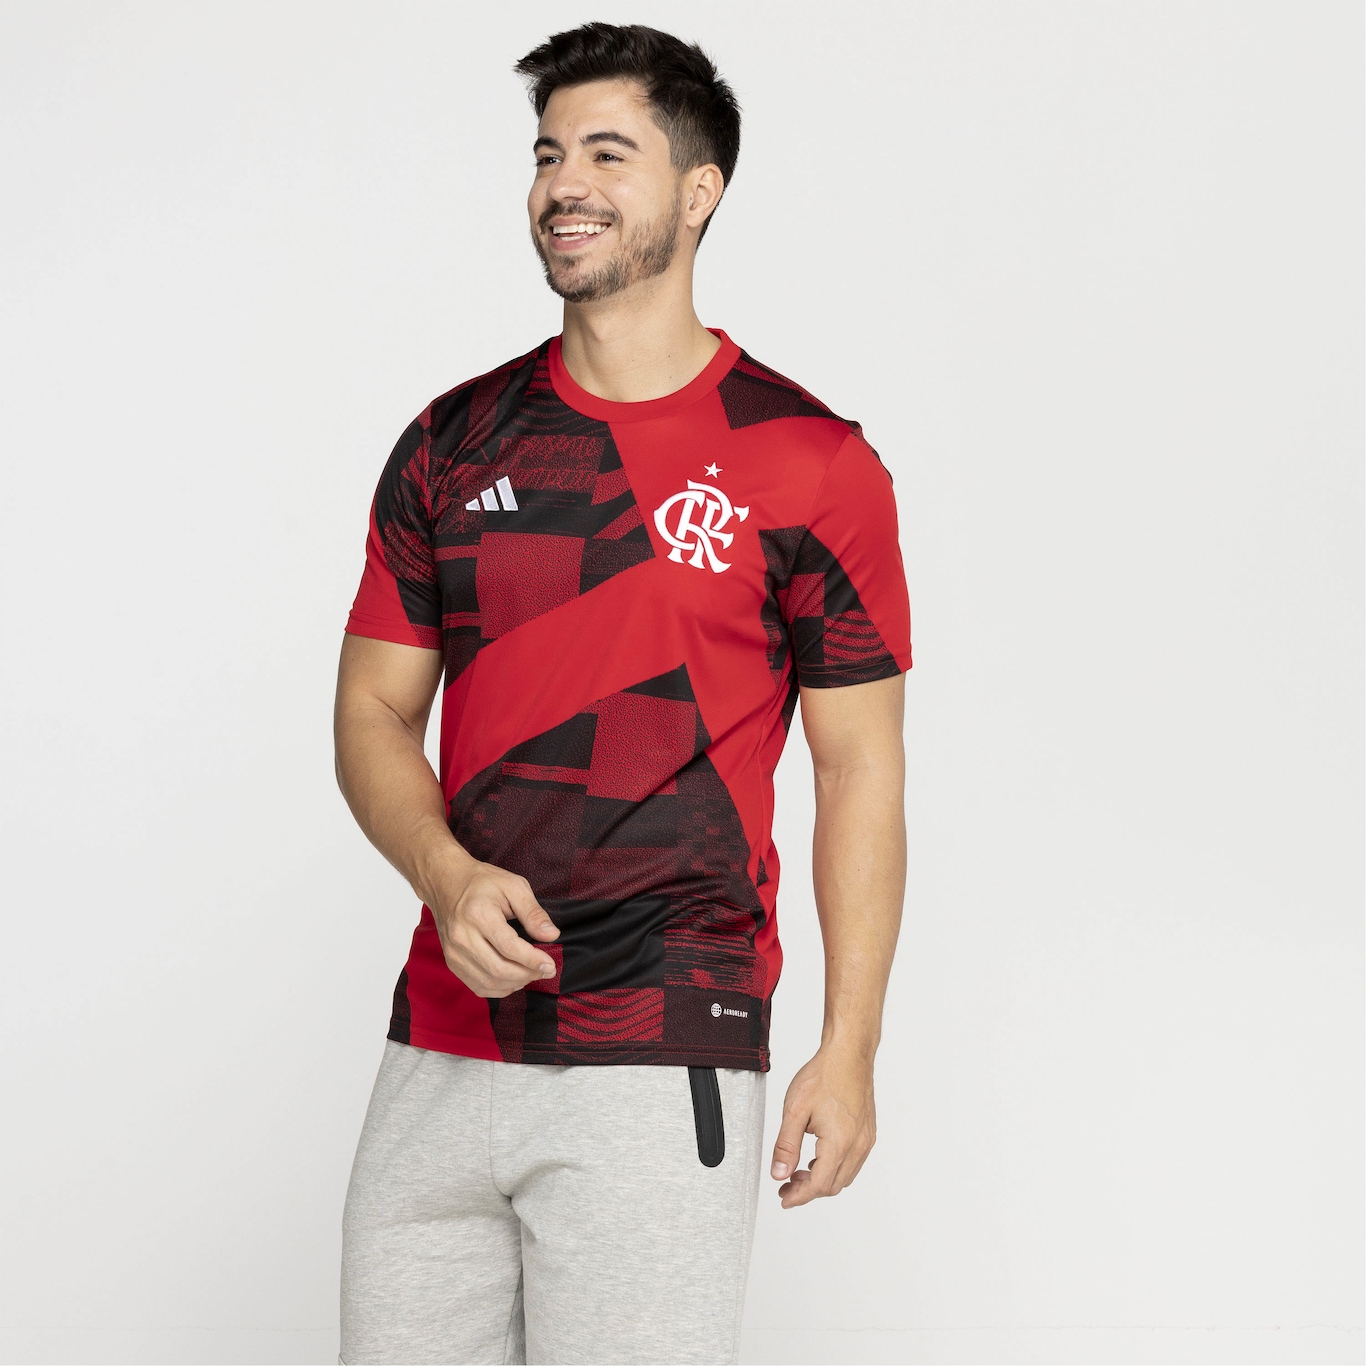 Camisa Pré-Jogo do Flamengo 23 adidas - Masculina - Foto 3